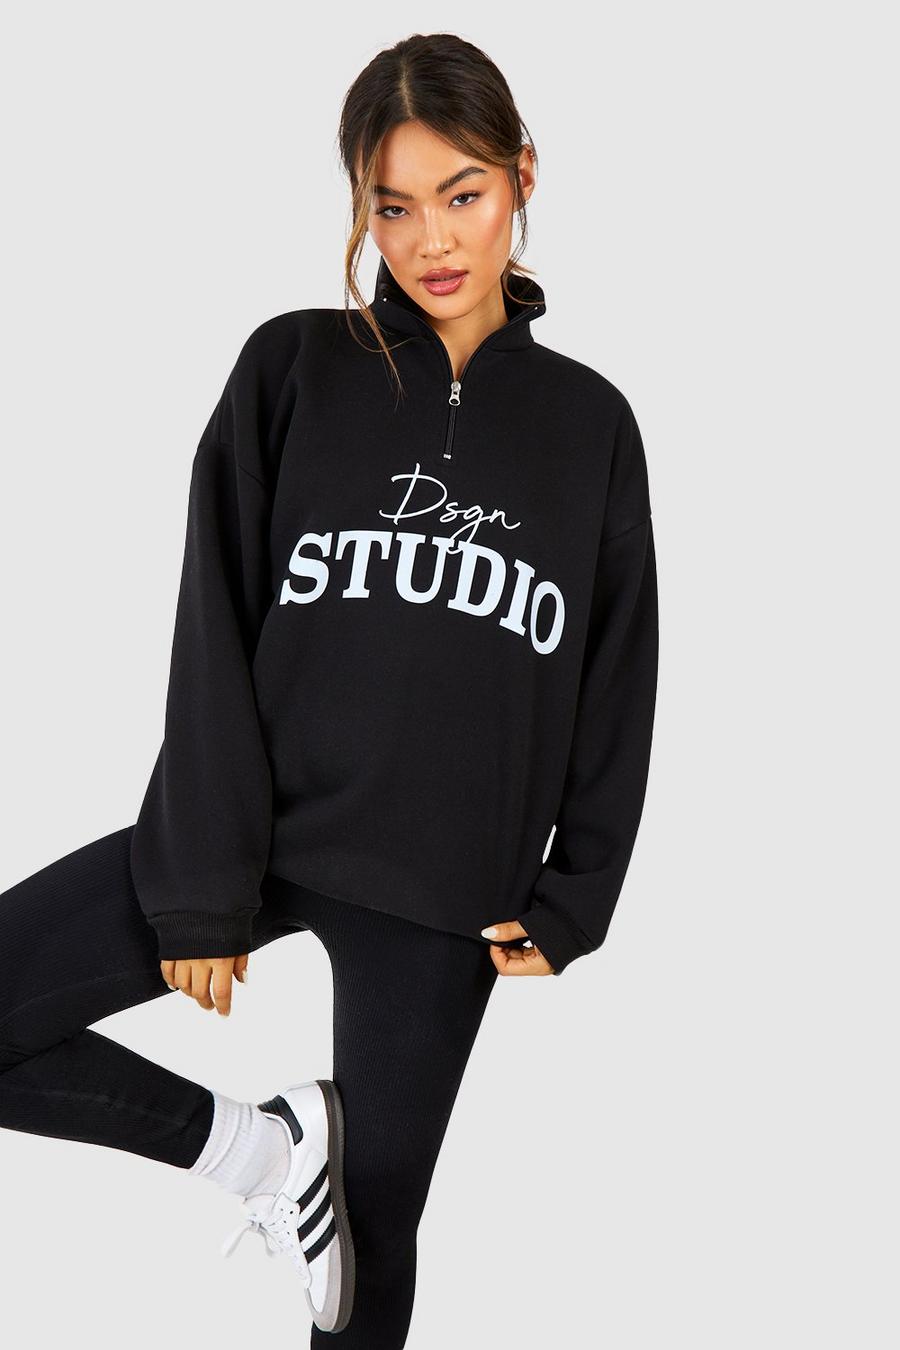 Oversize Sweatshirt mit Dsgn Studio Print und halbem Reißverschluss, Black